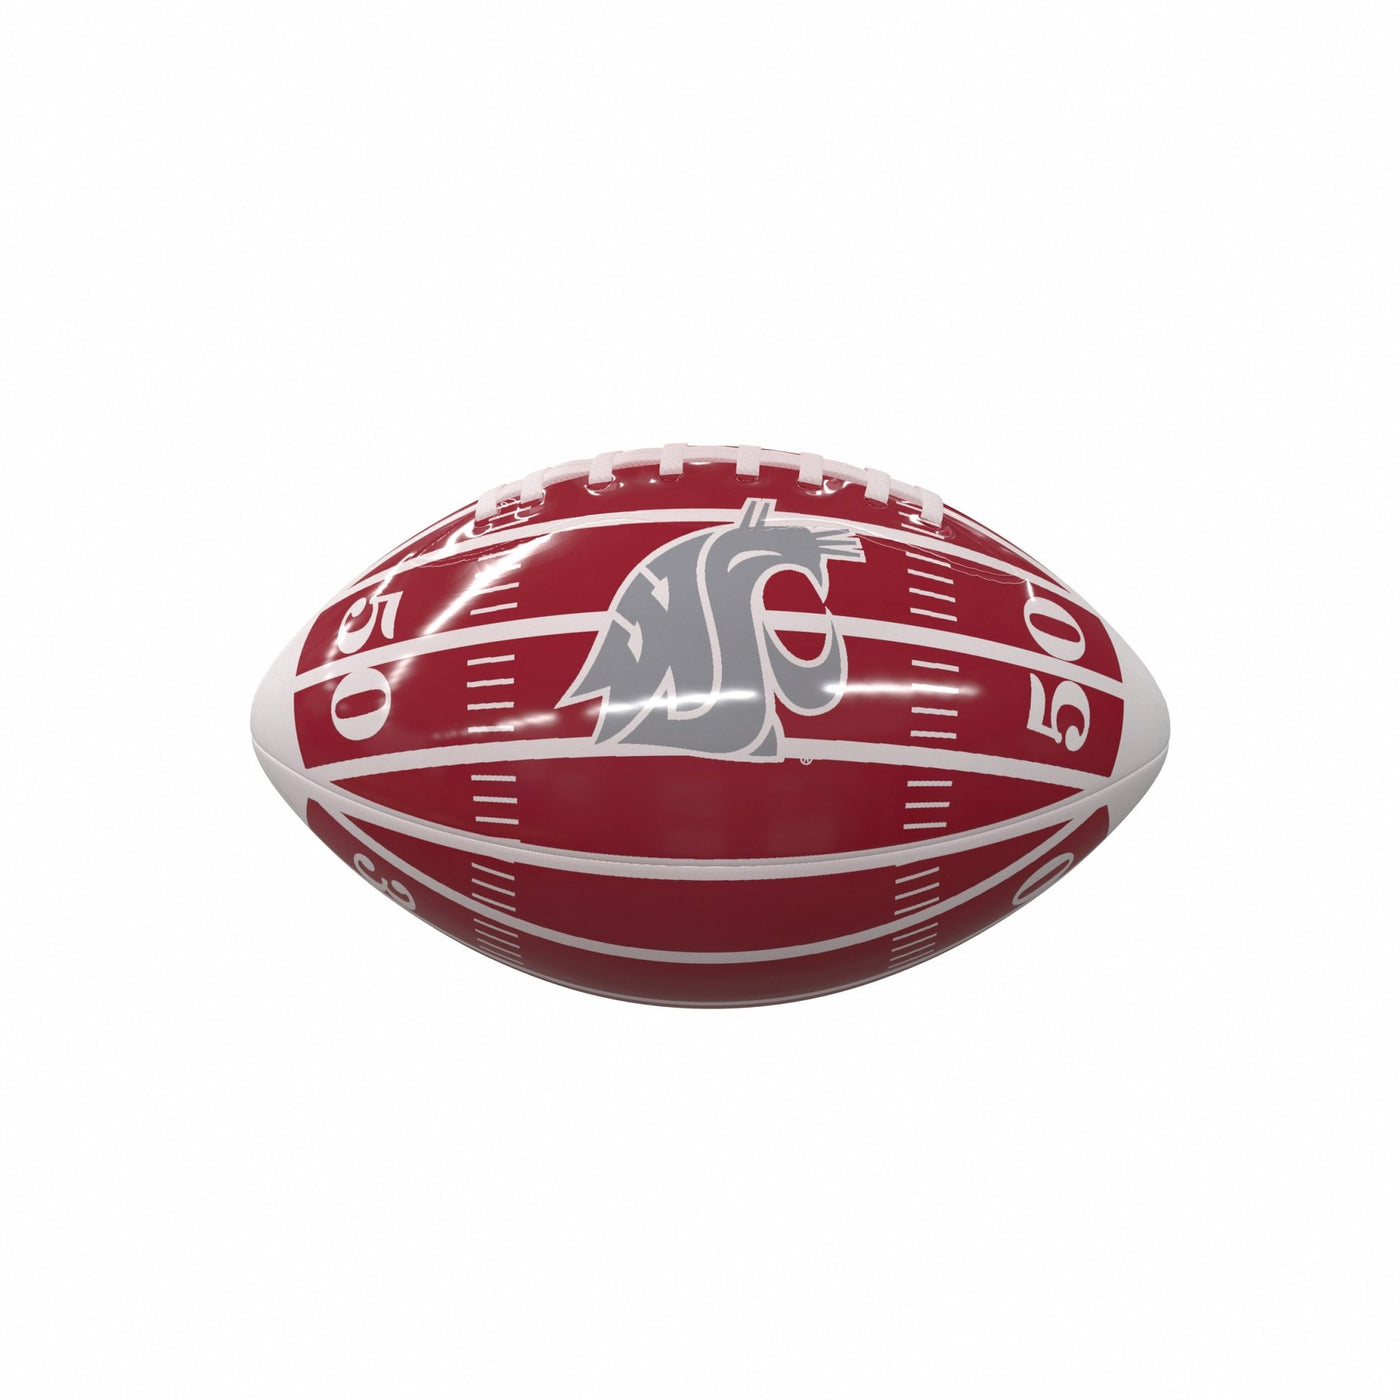 WA State Field Mini-Size Glossy Football - Logo Brands